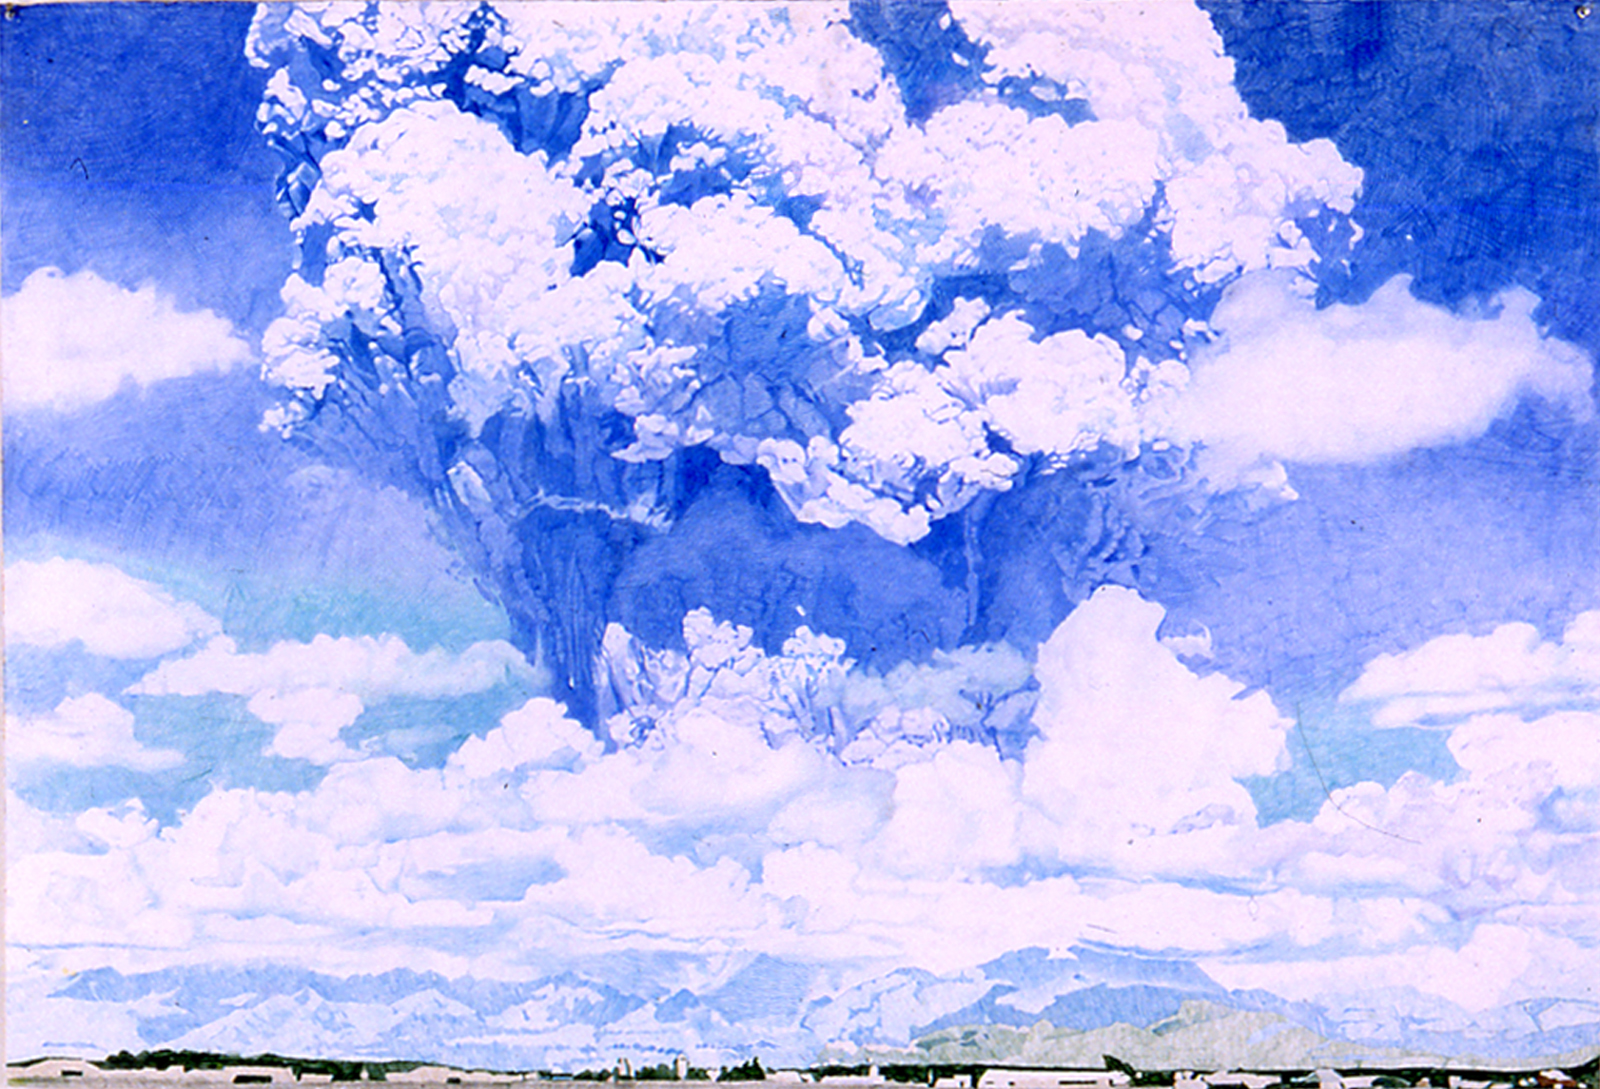 Blue Pinatubo, 1999, Colored pencil on paper, 41 x 60 inches, Progressive Collection